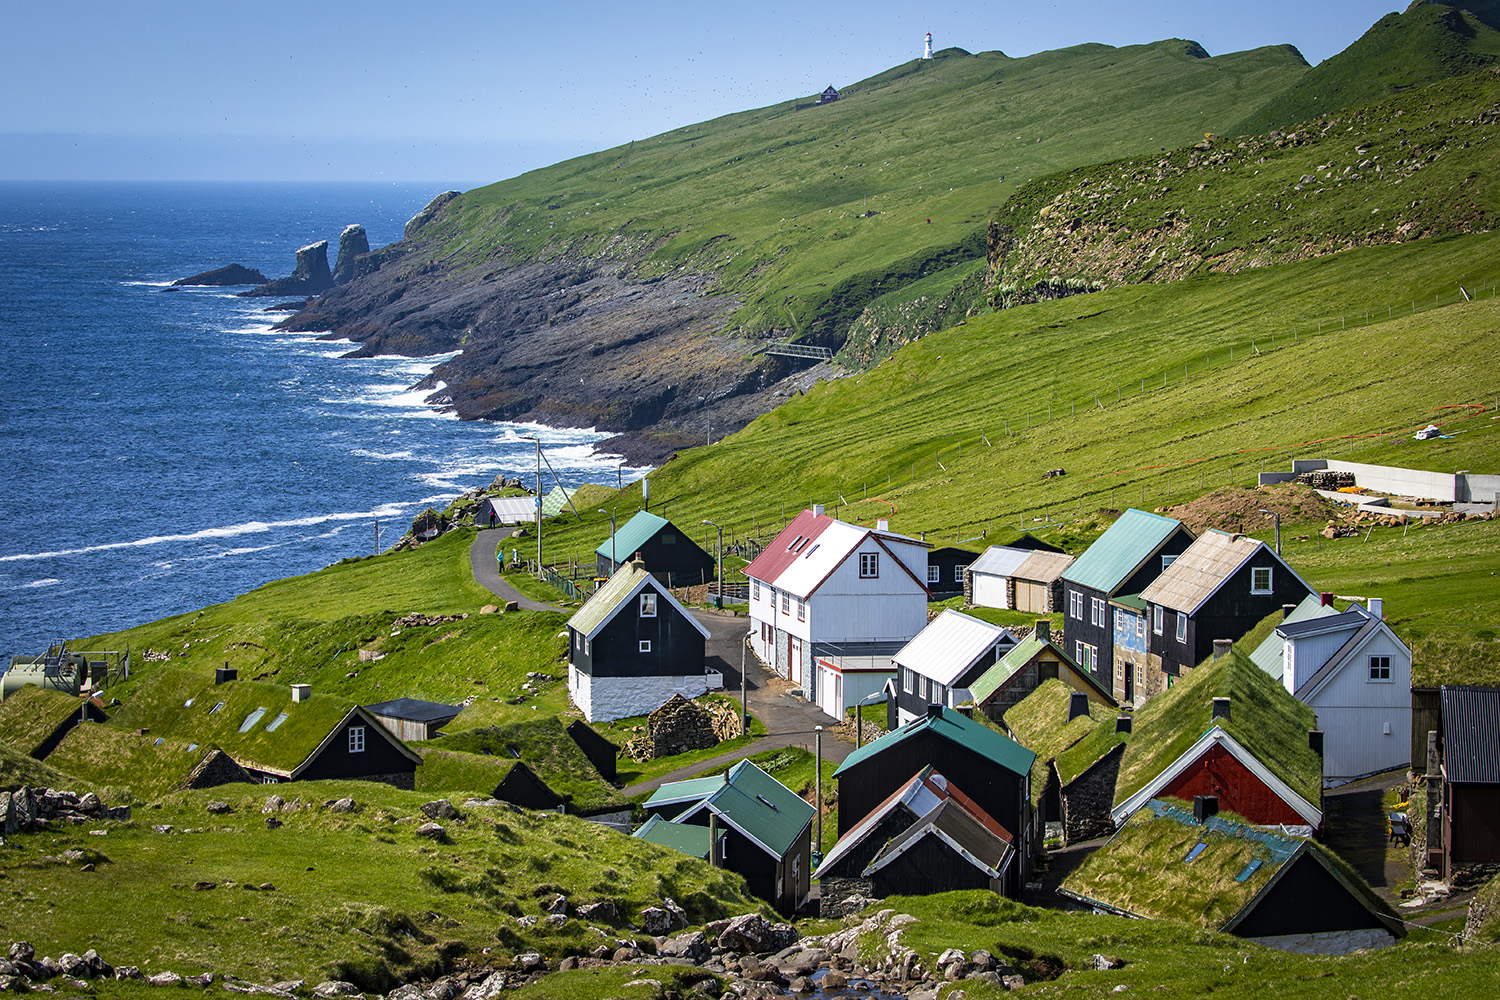 The village of Mykines, Faroe Islands